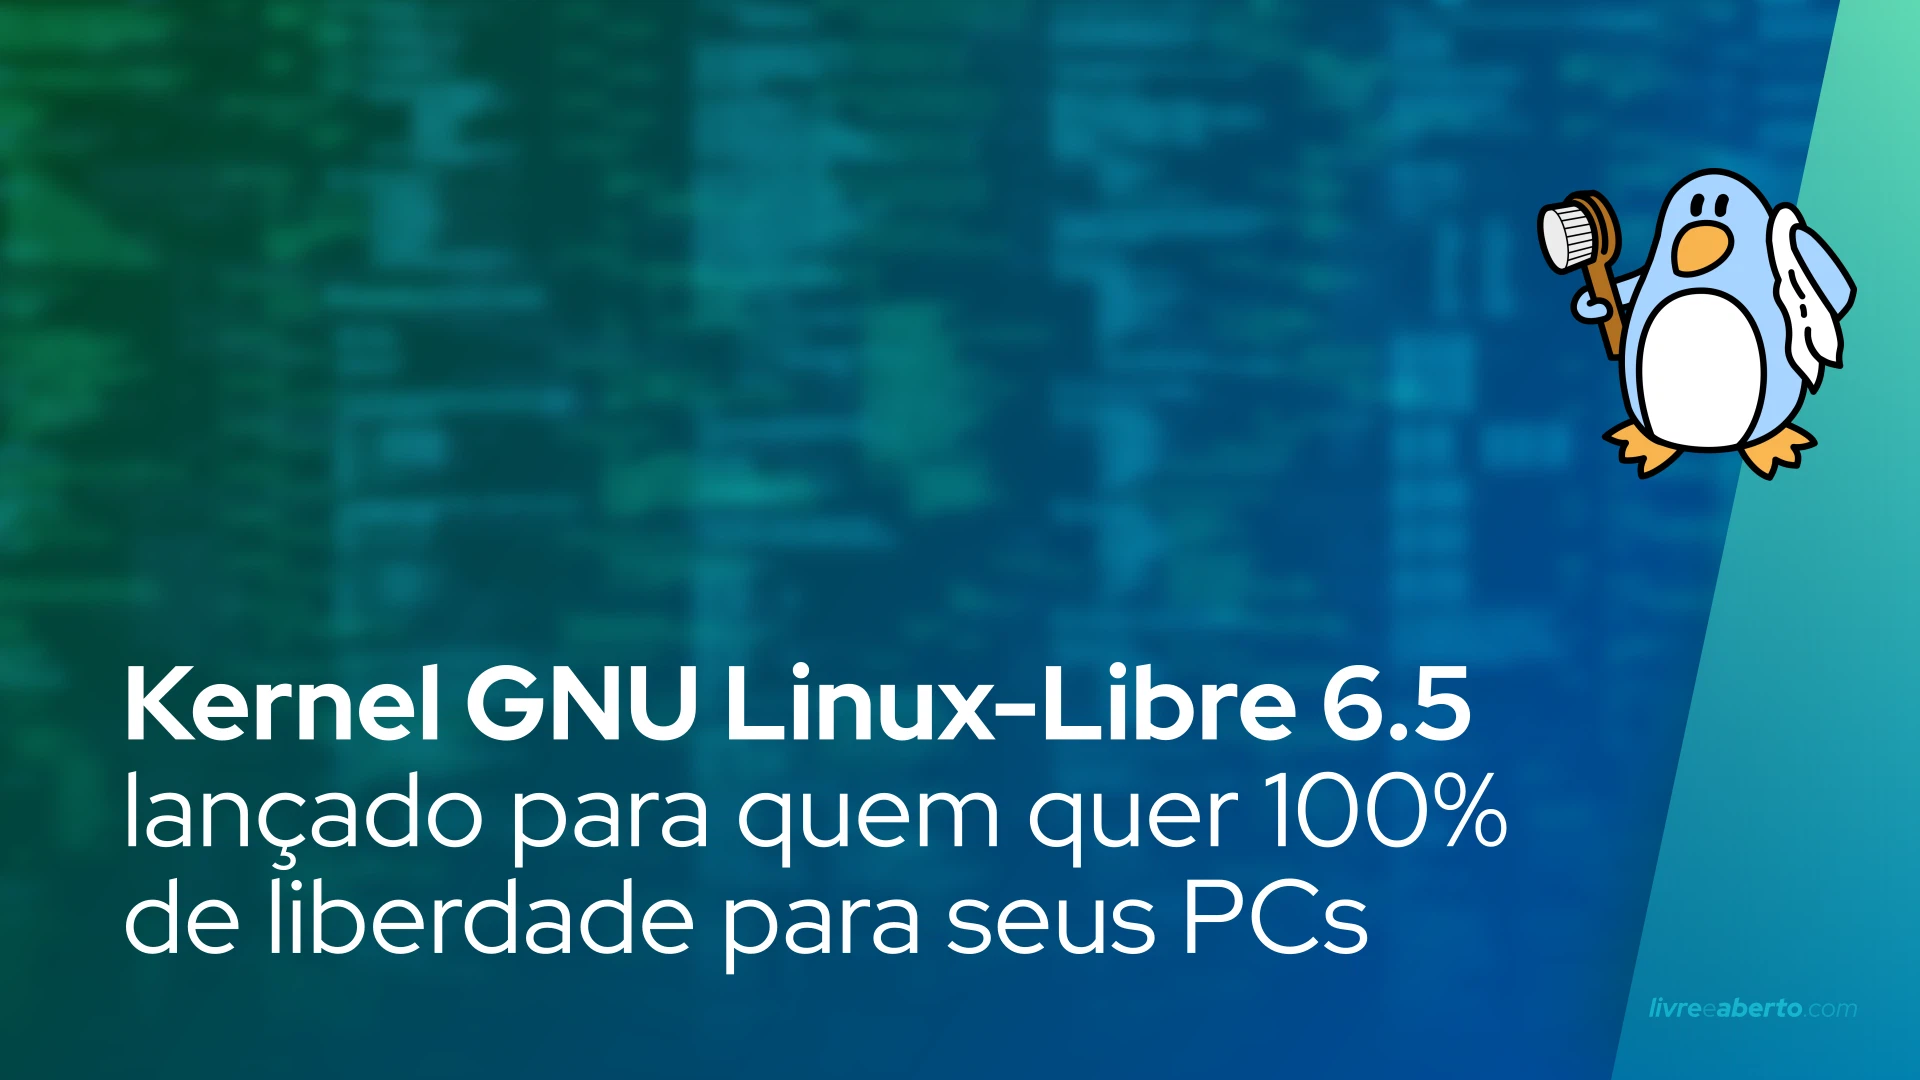 Kernel GNU Linux-Libre 6.5 lançado para aqueles que buscam 100% de liberdade para seus PCs